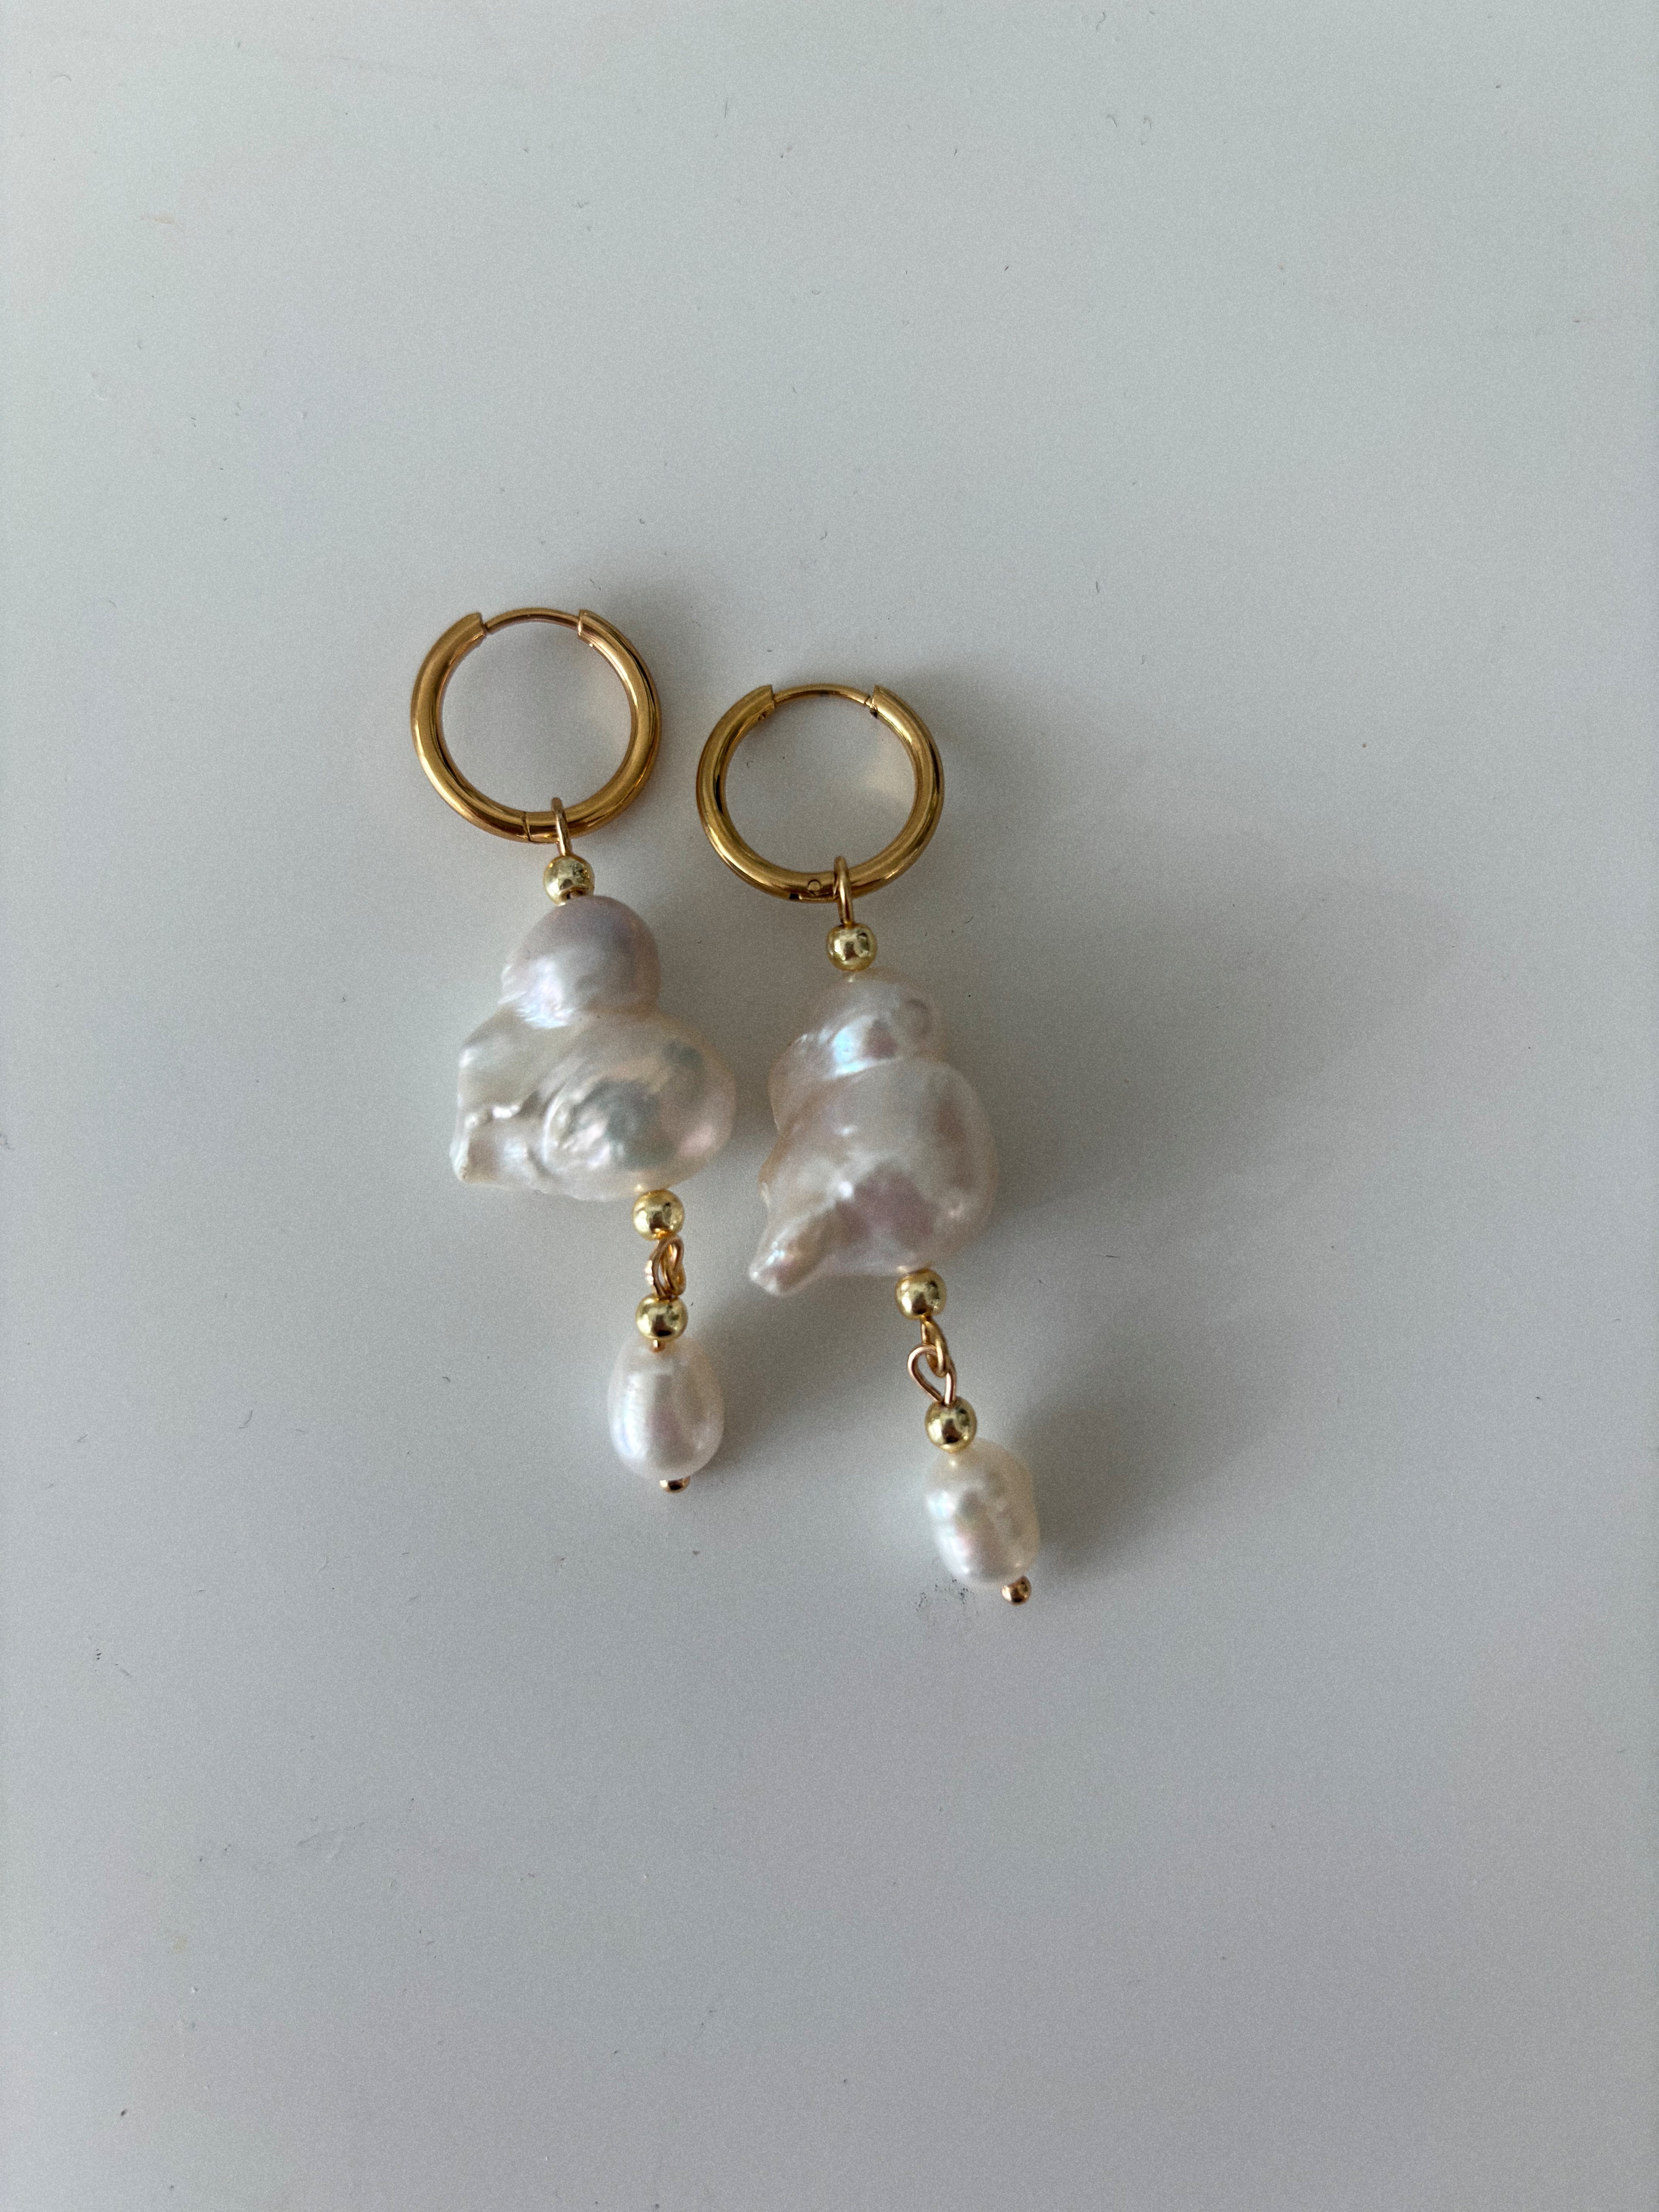 Caro - Earrings "freesia" in gold